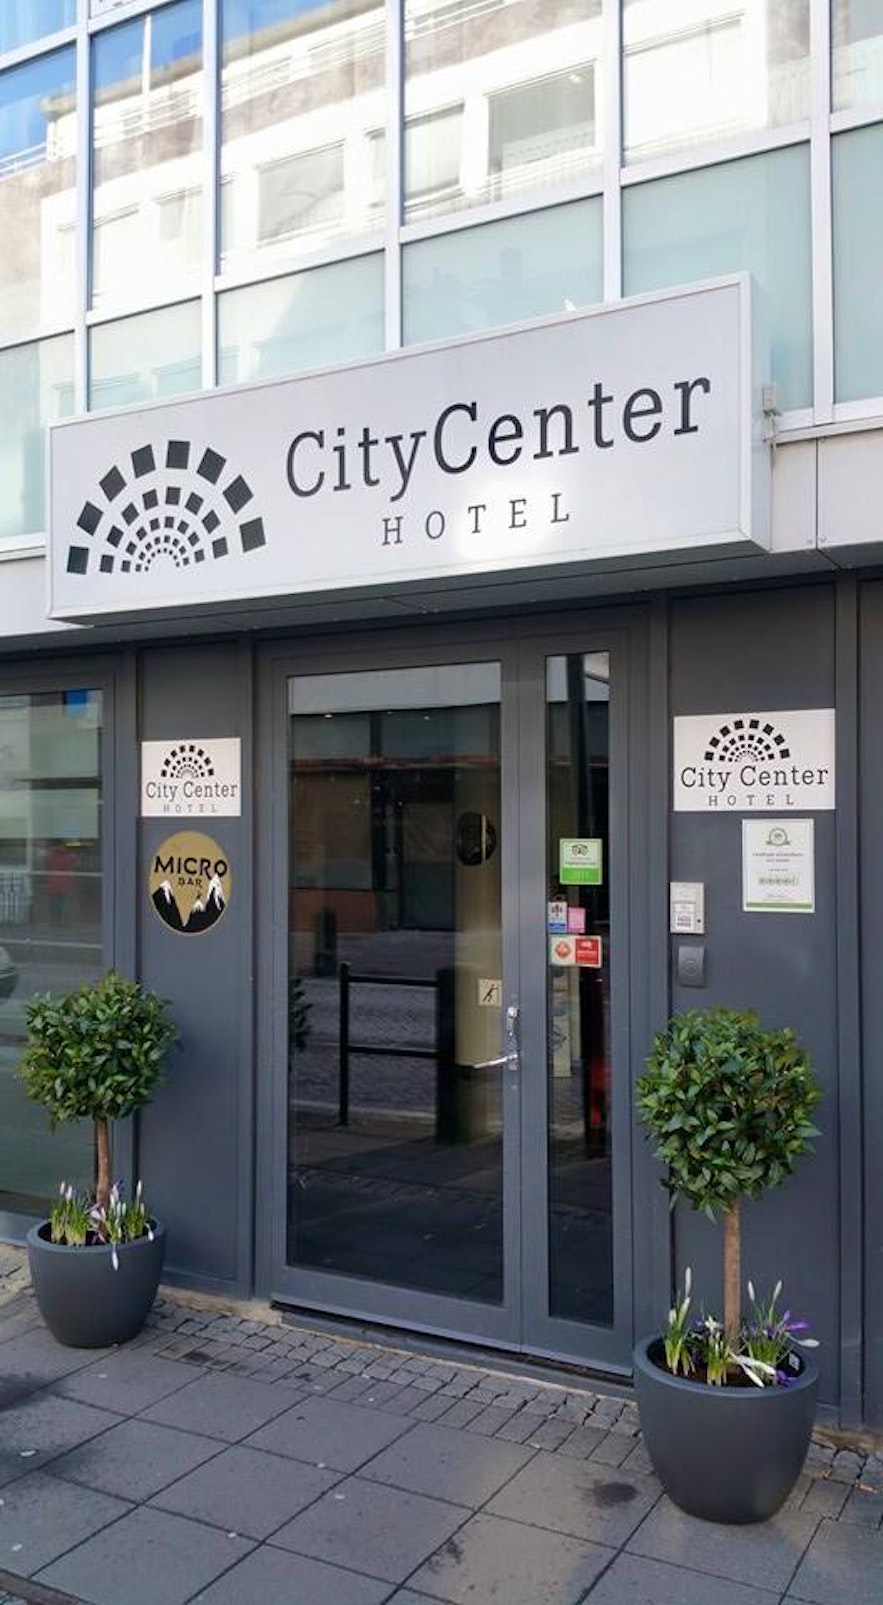 Le City Center Hotel est situé en plein centre-ville.